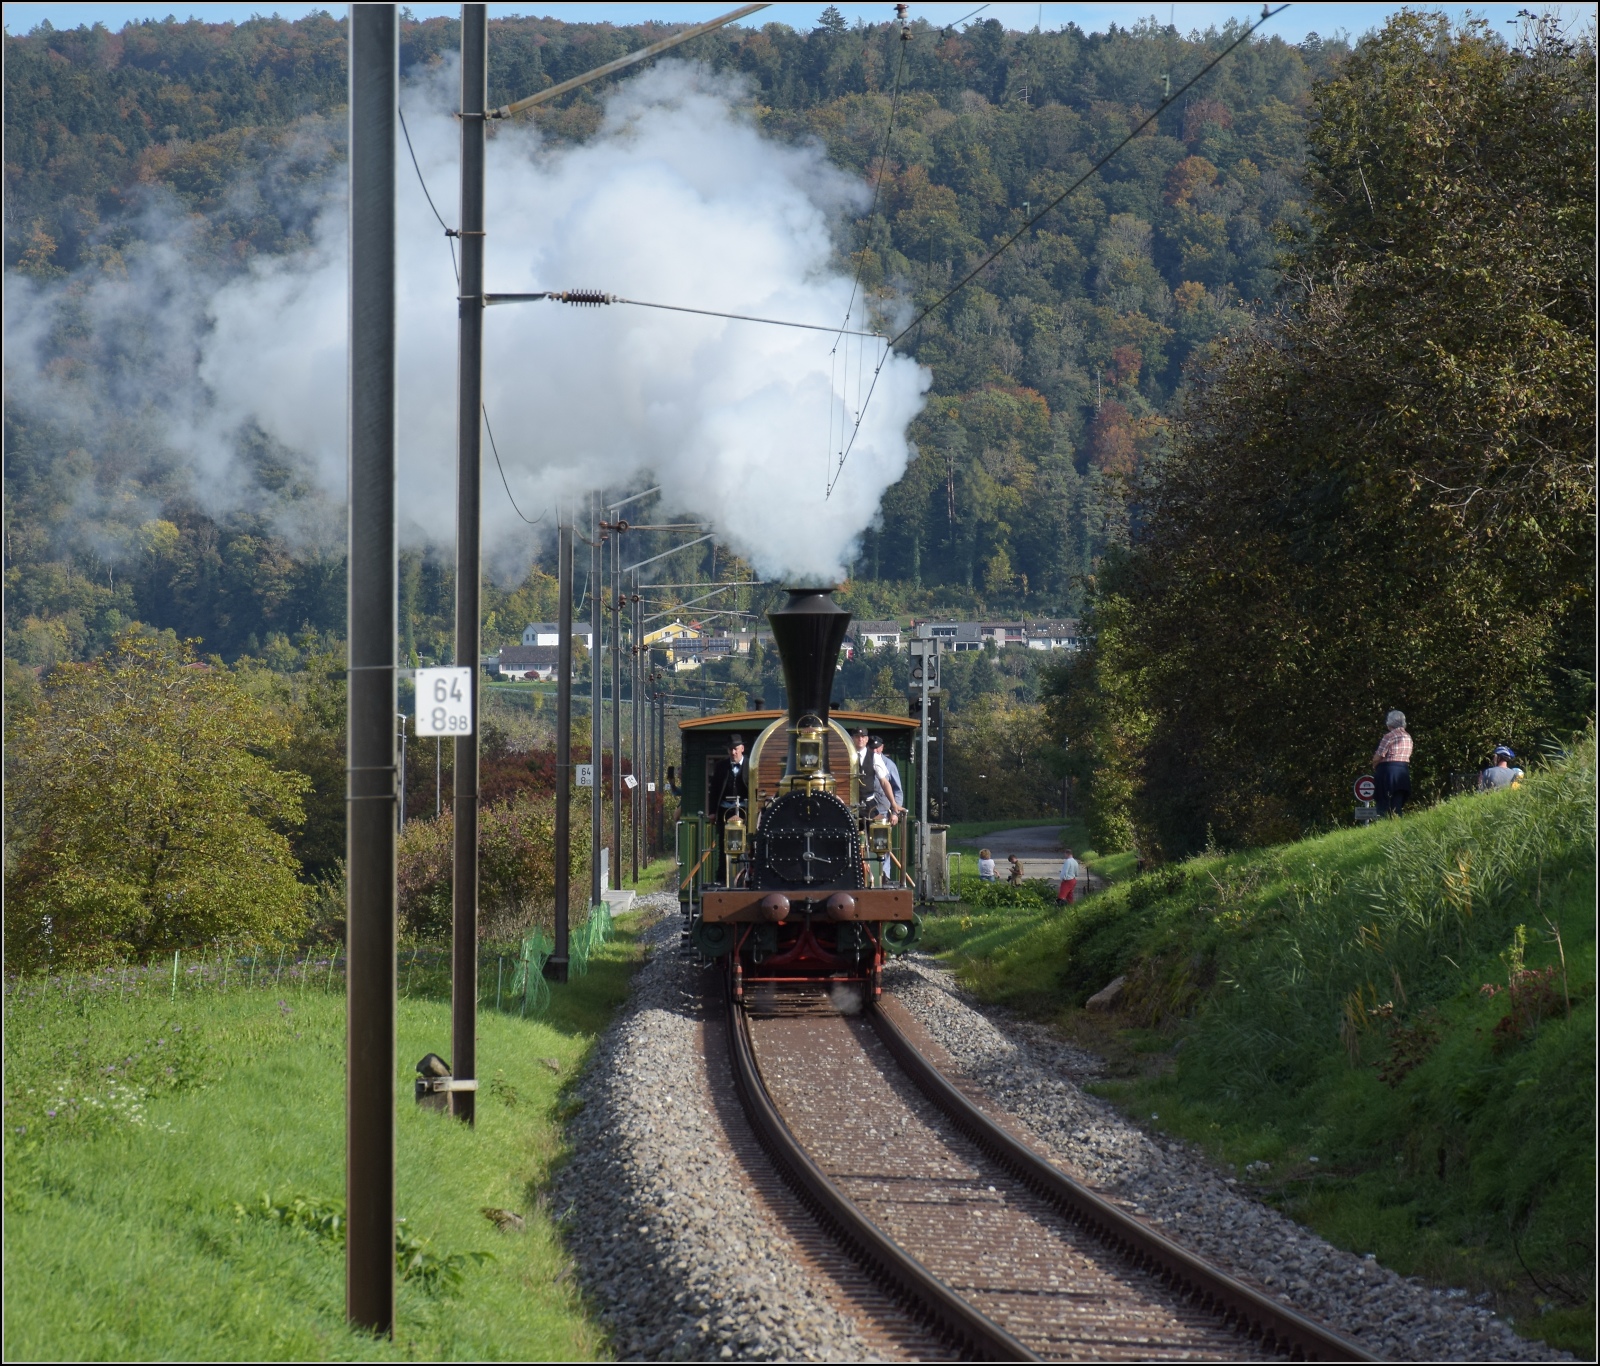 Spanisch-Brötli-Bahn zum 175. Geburtstag.

Einfahrt nach Laufenburg, Oktober 2022.